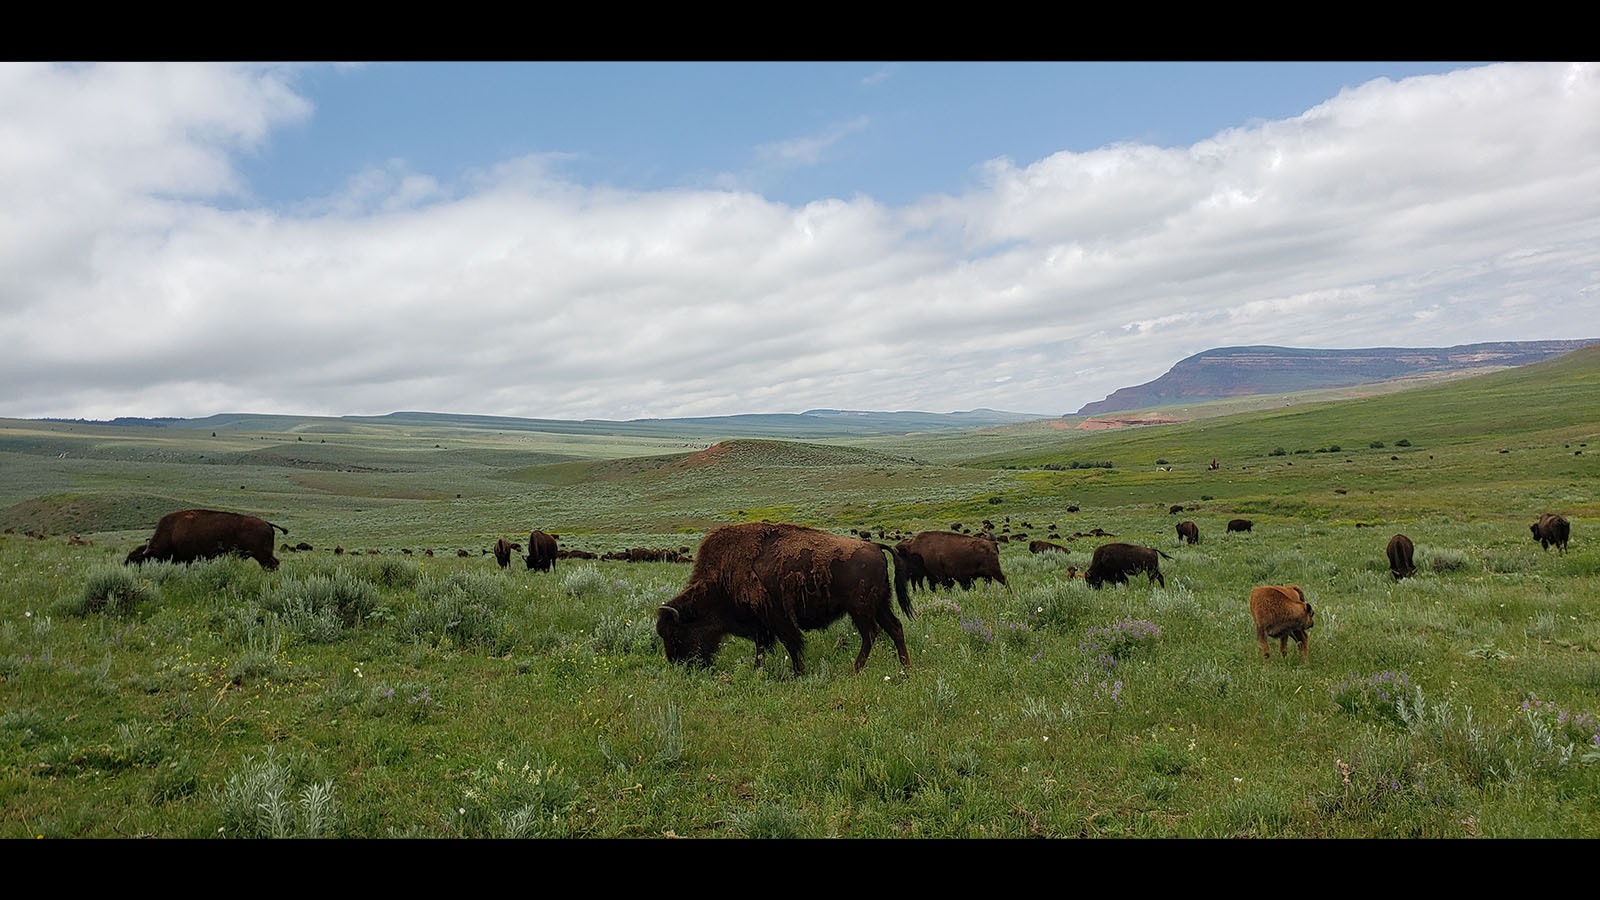 Josh Kirk has 400 head of bison in his Wyoming herd.